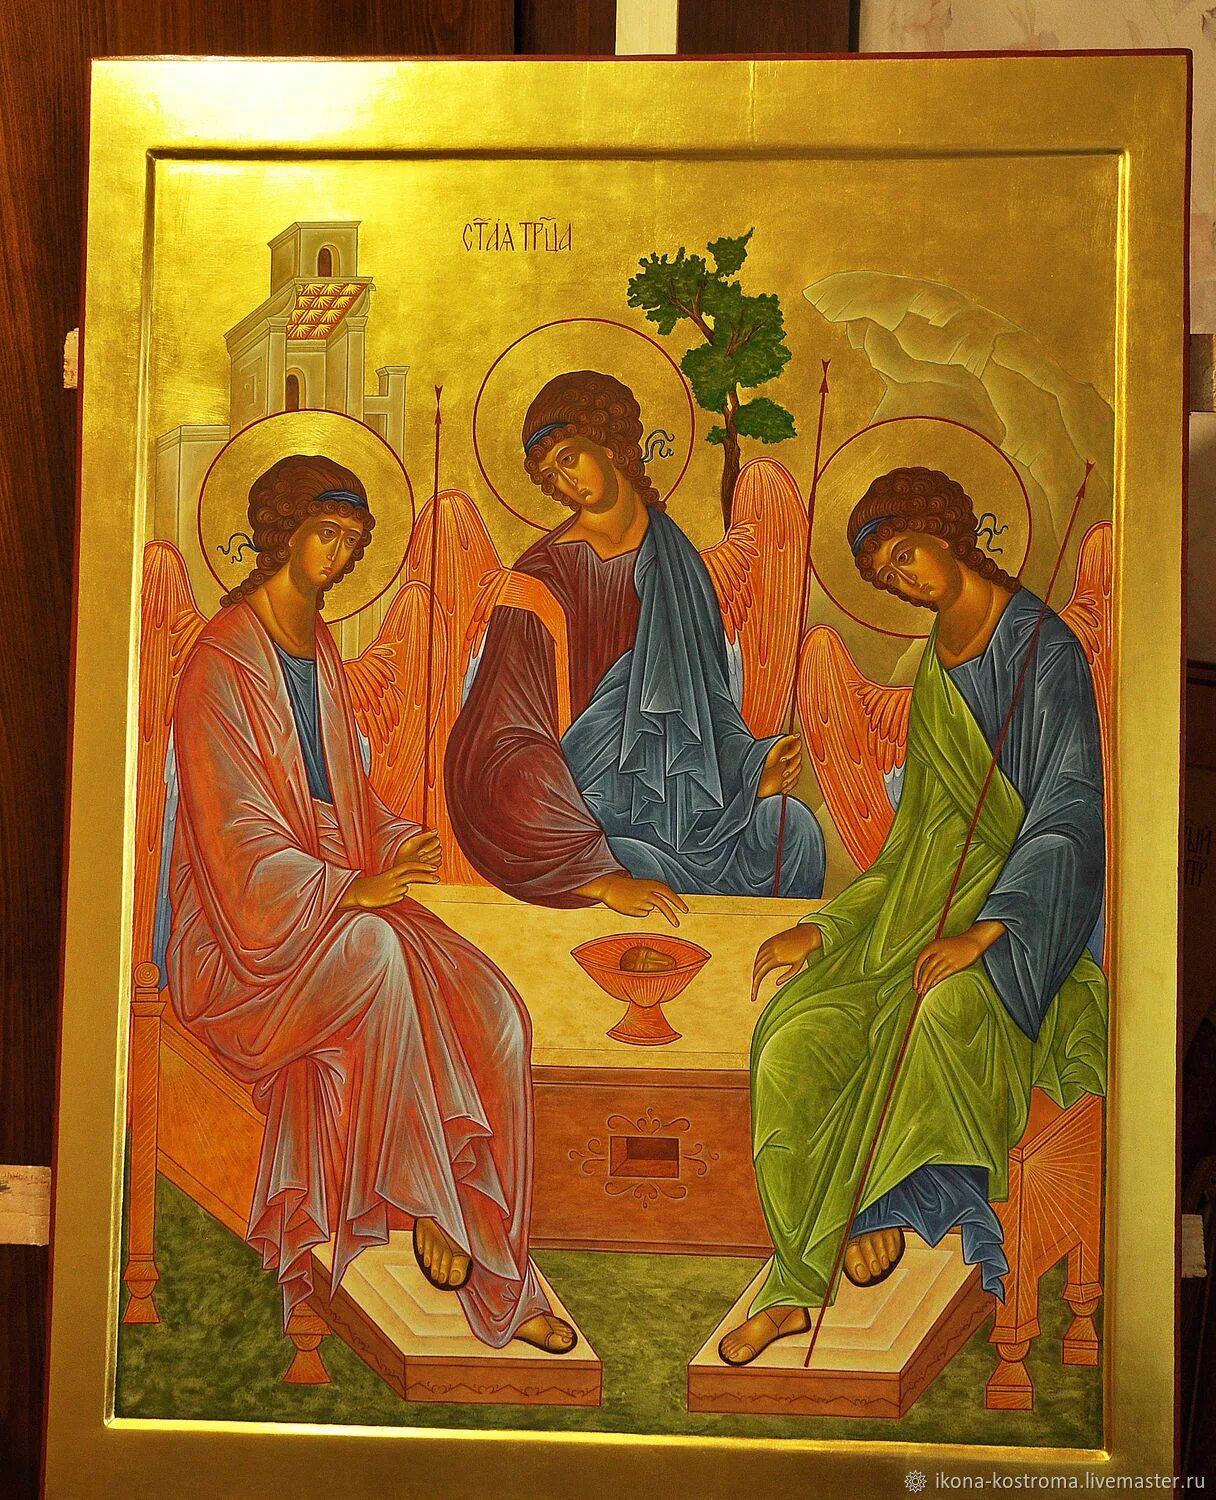 Пресвятая троица. Икона Святой Троицы. Троица икона Святой Троицы. Пресвятая Троица икона Православие. Образ Святой Троицы икона.